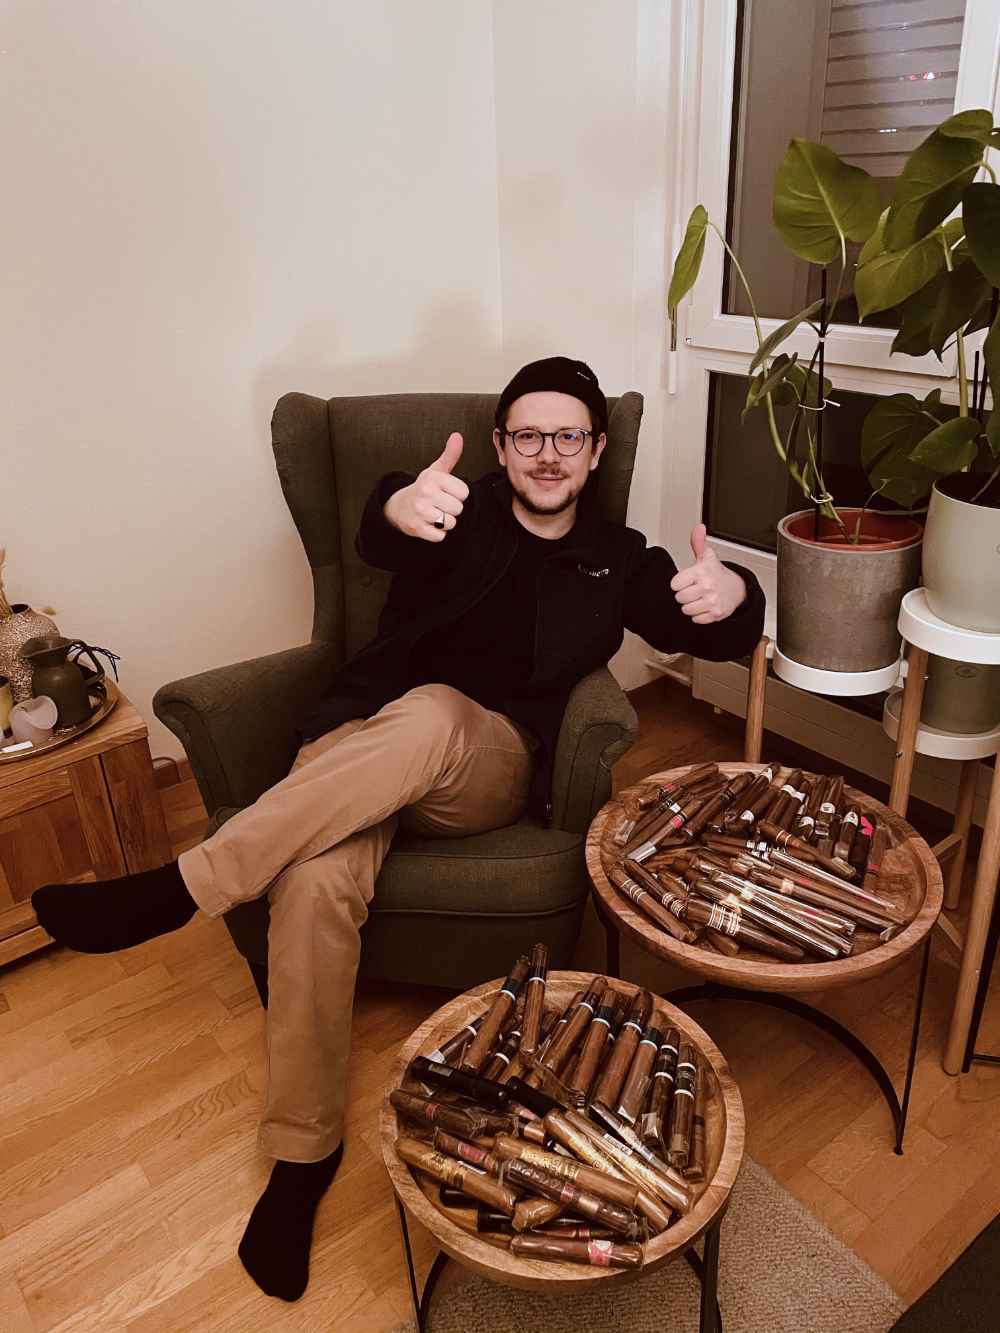 Tomislav Panic 100 Zigarren gewonnen